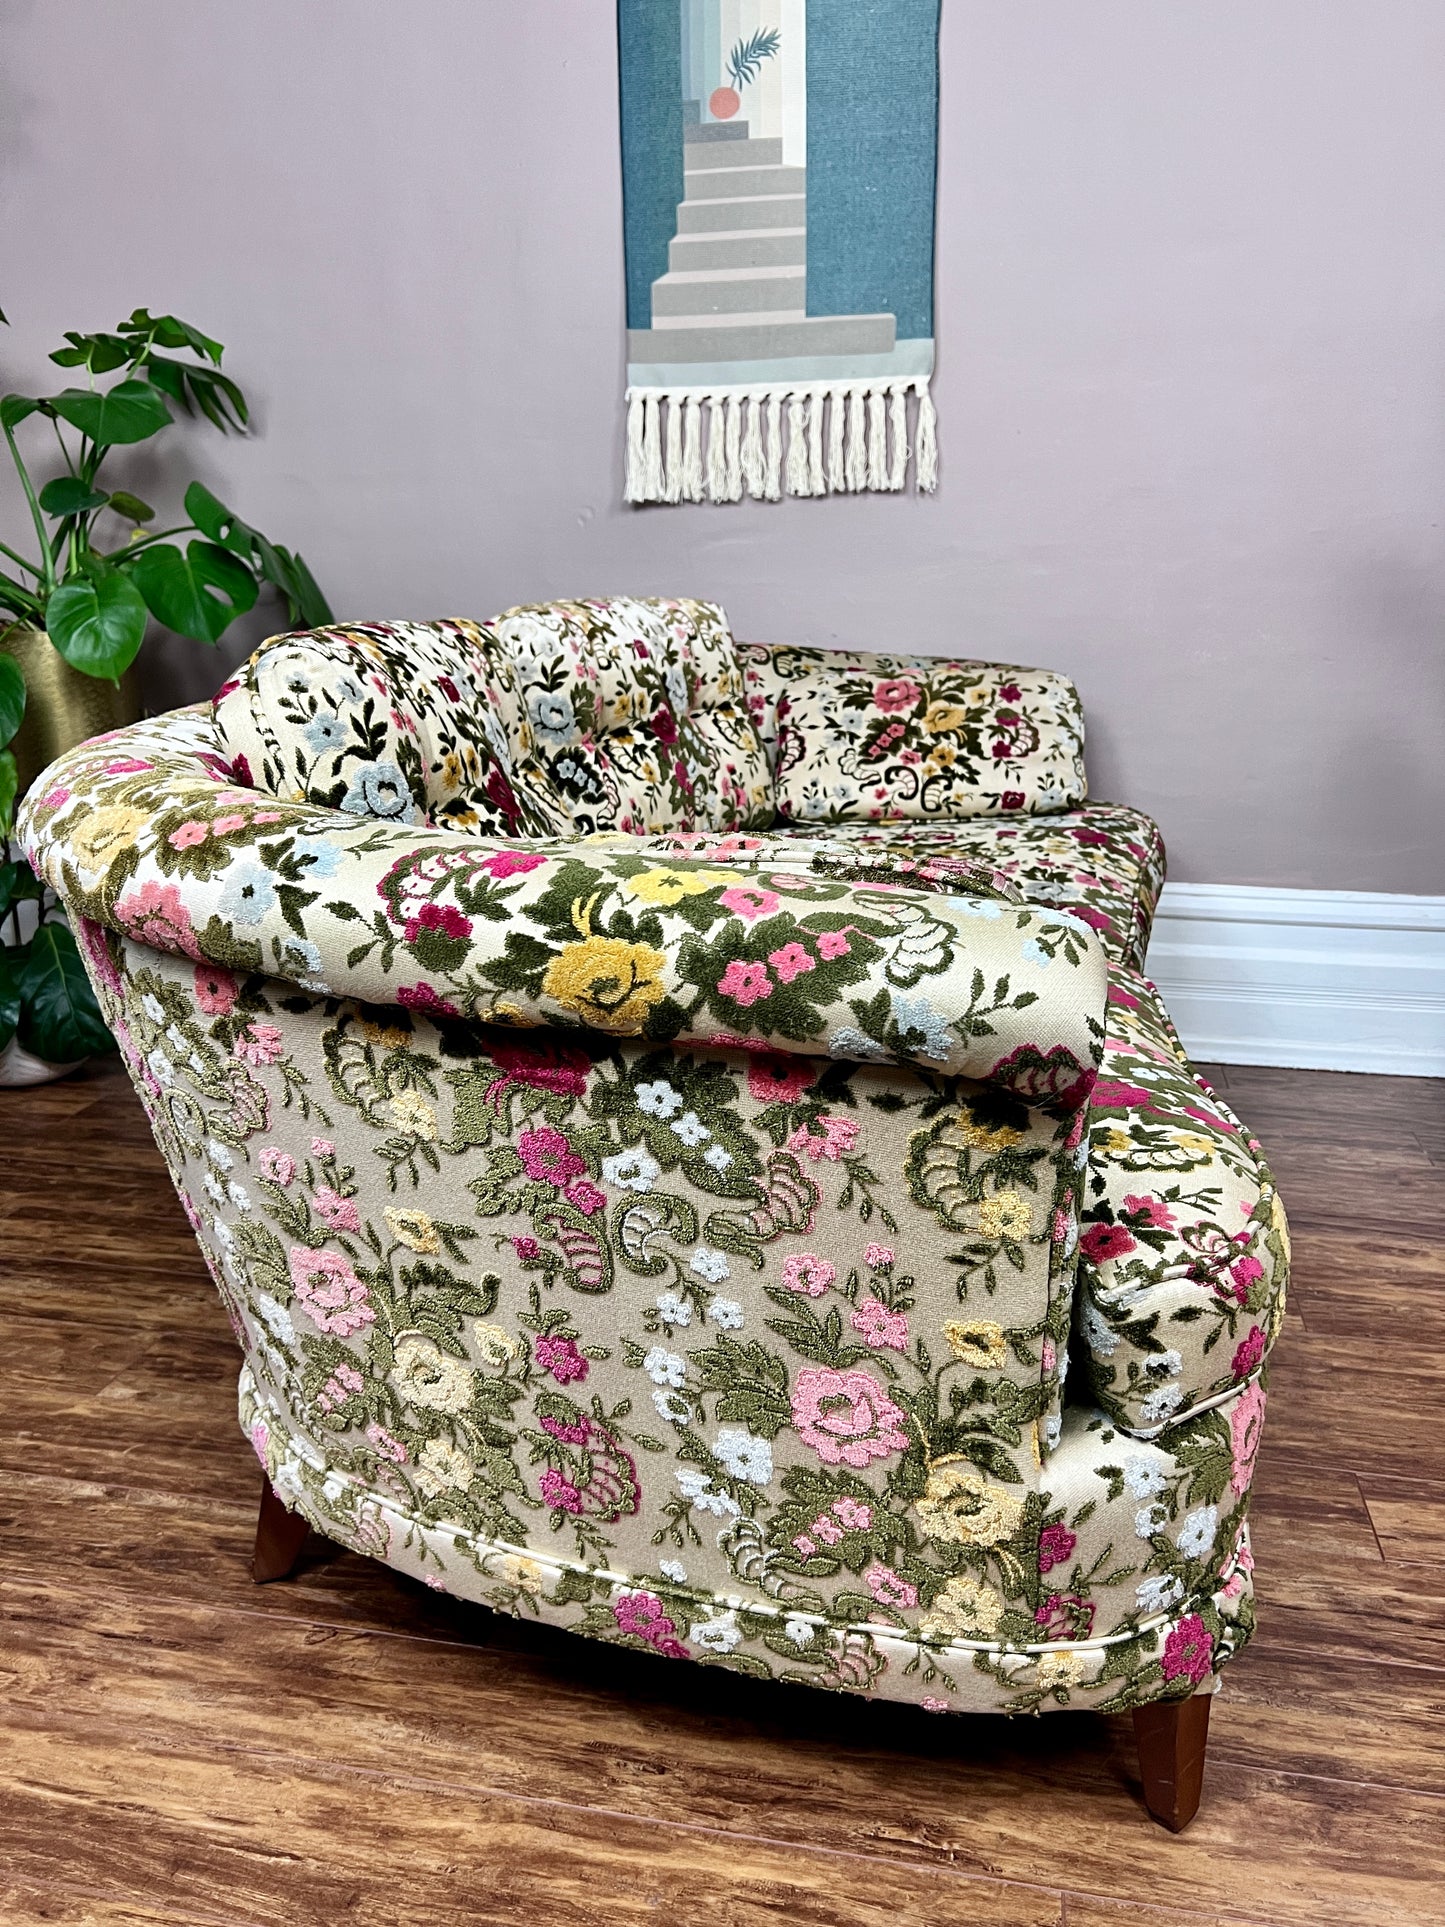 The Zoltar Sofa